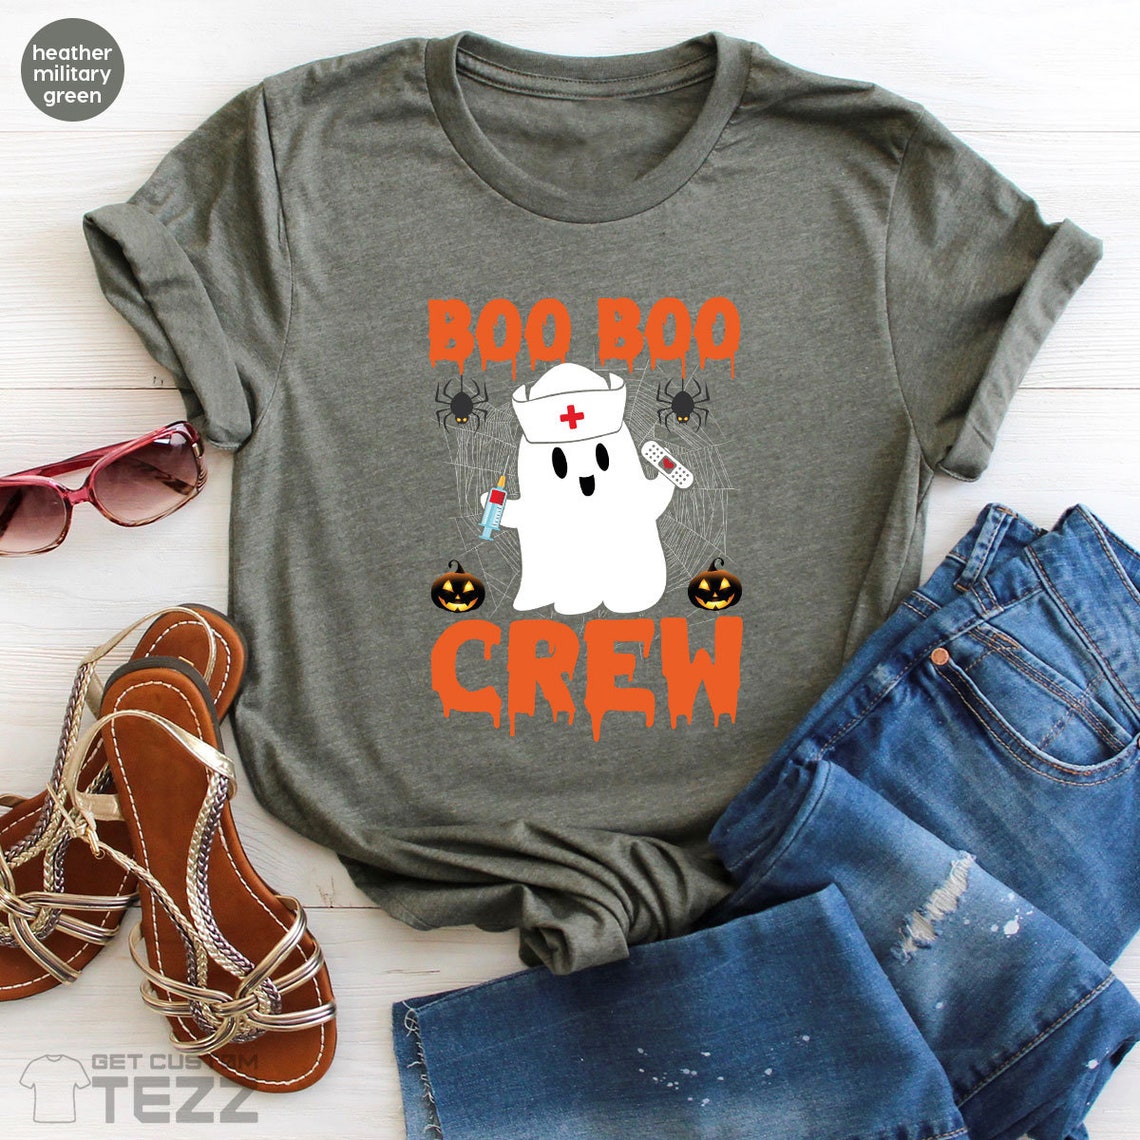 Boo Boo Shirt, Boo Crew Shirt, Halloween Shirt, Cute Halloween shirts, Halloween Nurse Shirts, Funny Halloween Shirts, Cute Nurse Shirt